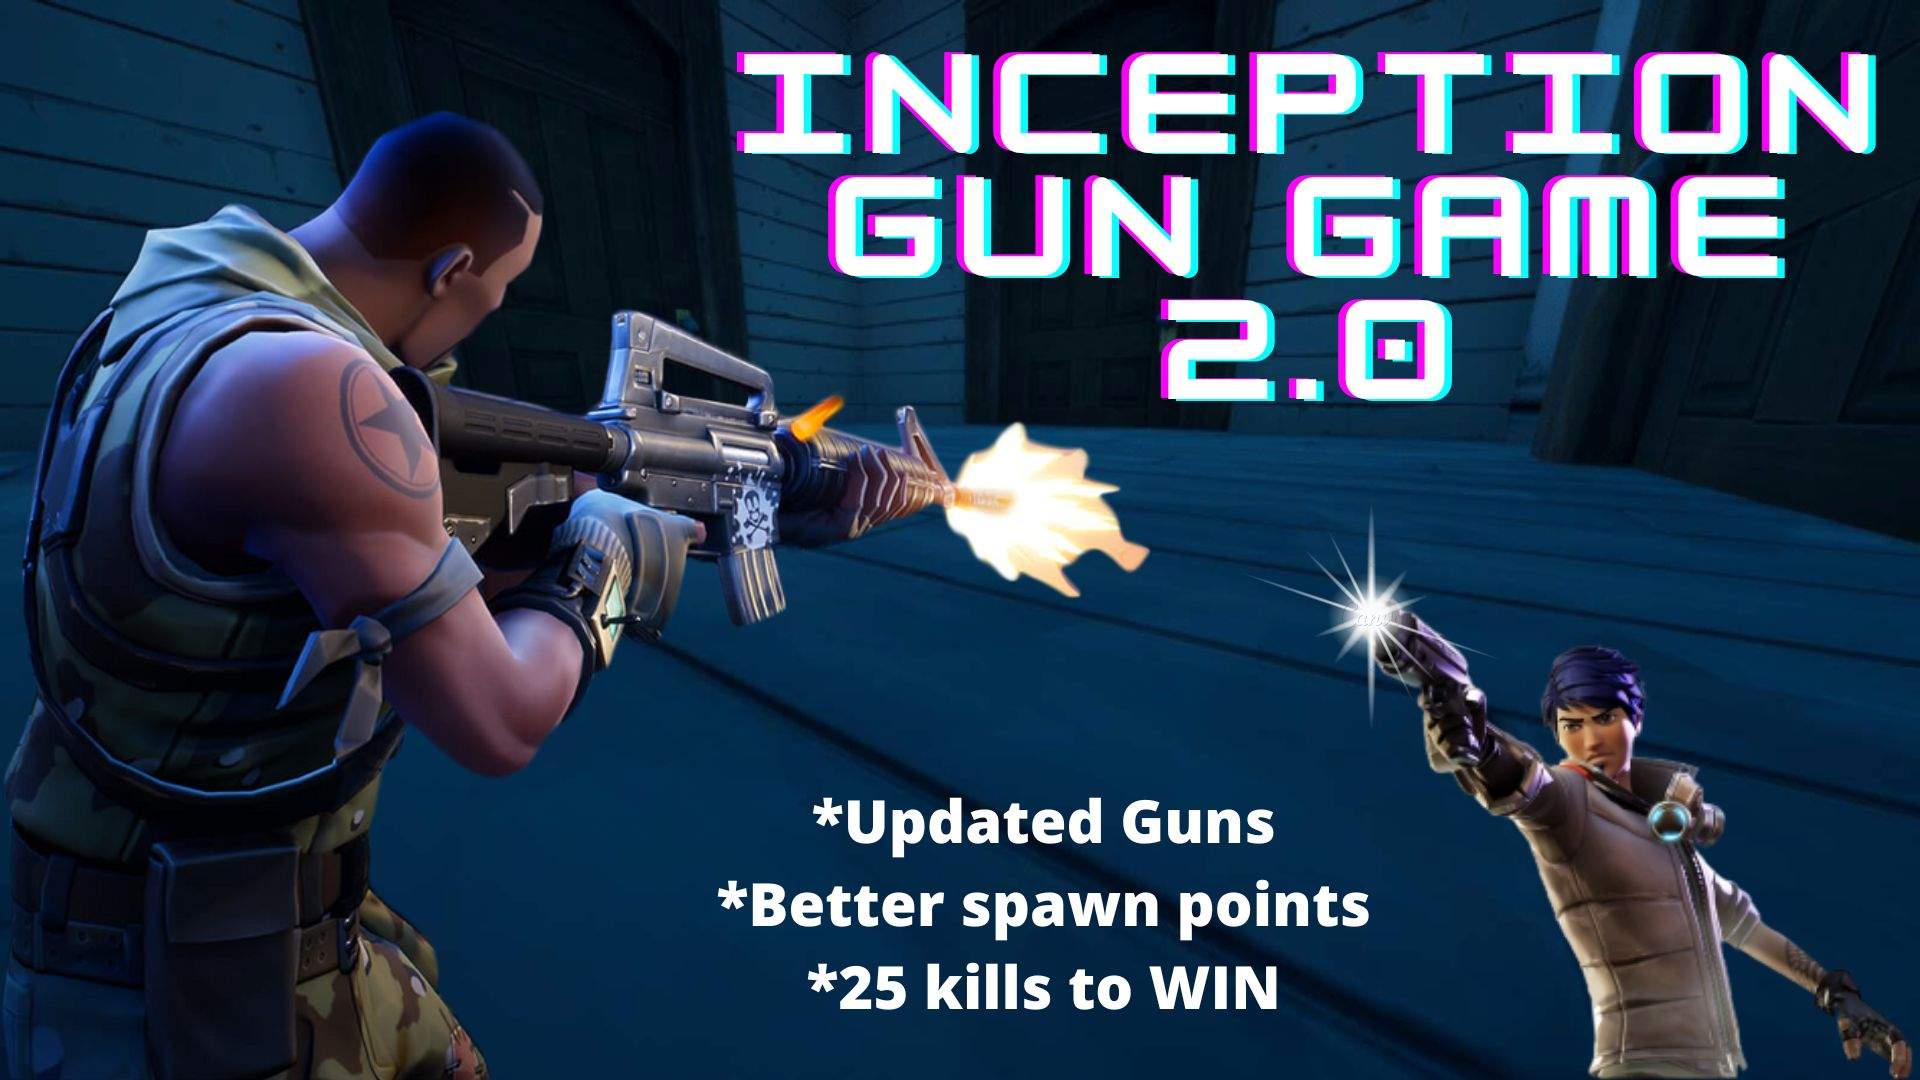 Inception Door Gun Game 2.0